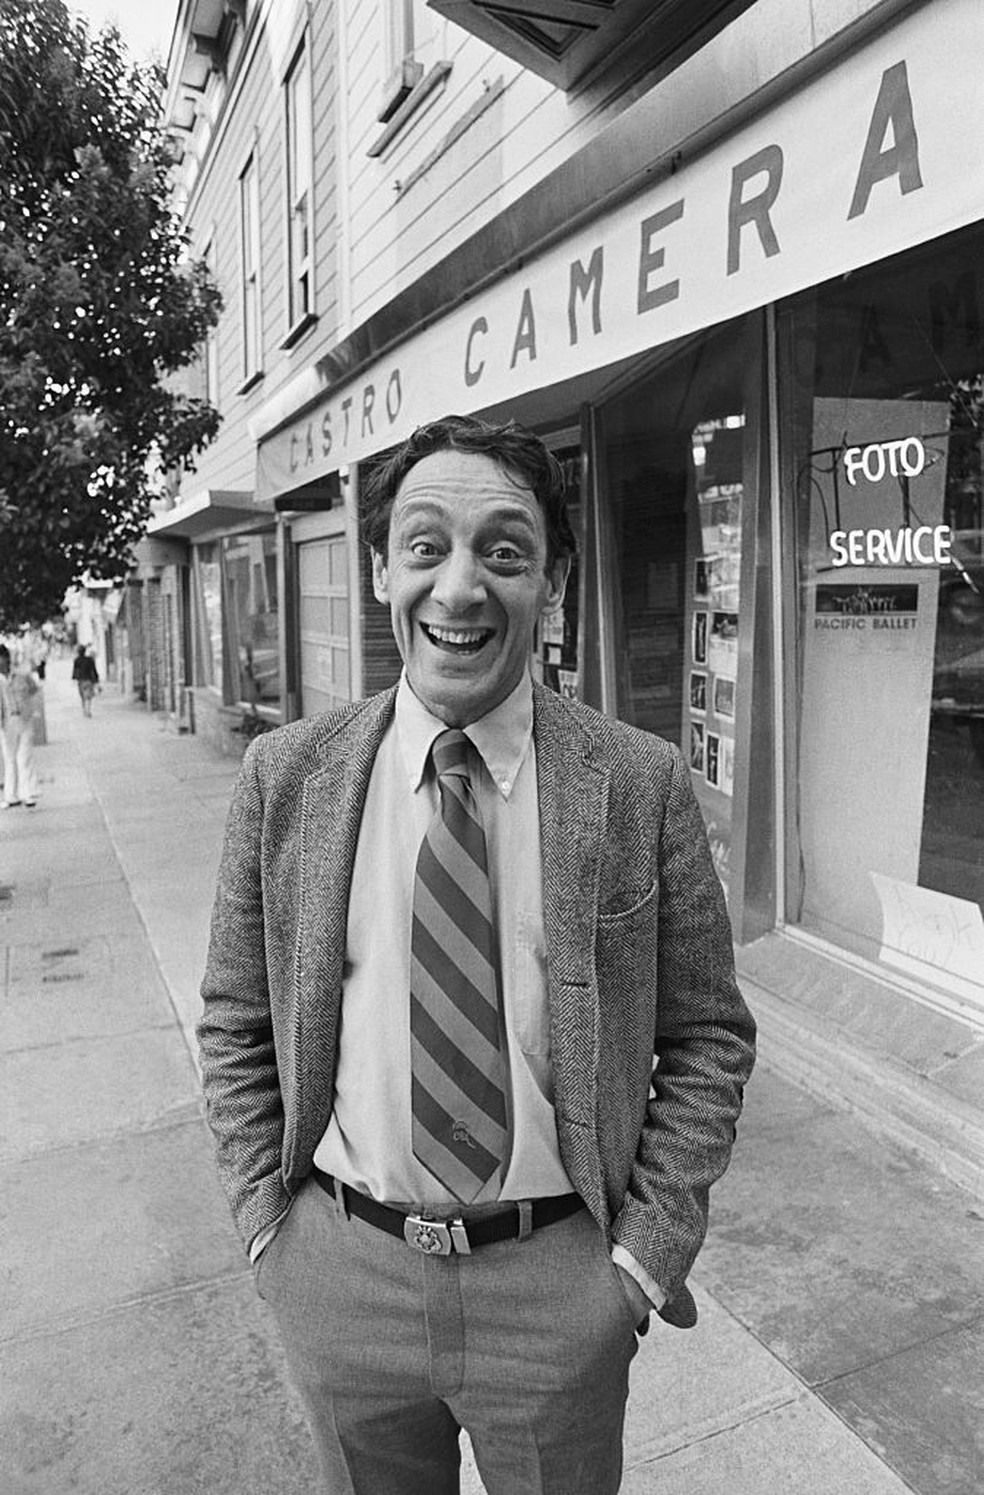 Harvey Milk em frente à Castro Camera, em 1977: loja serviu de refúgio e comitê político — Foto: GettyImages